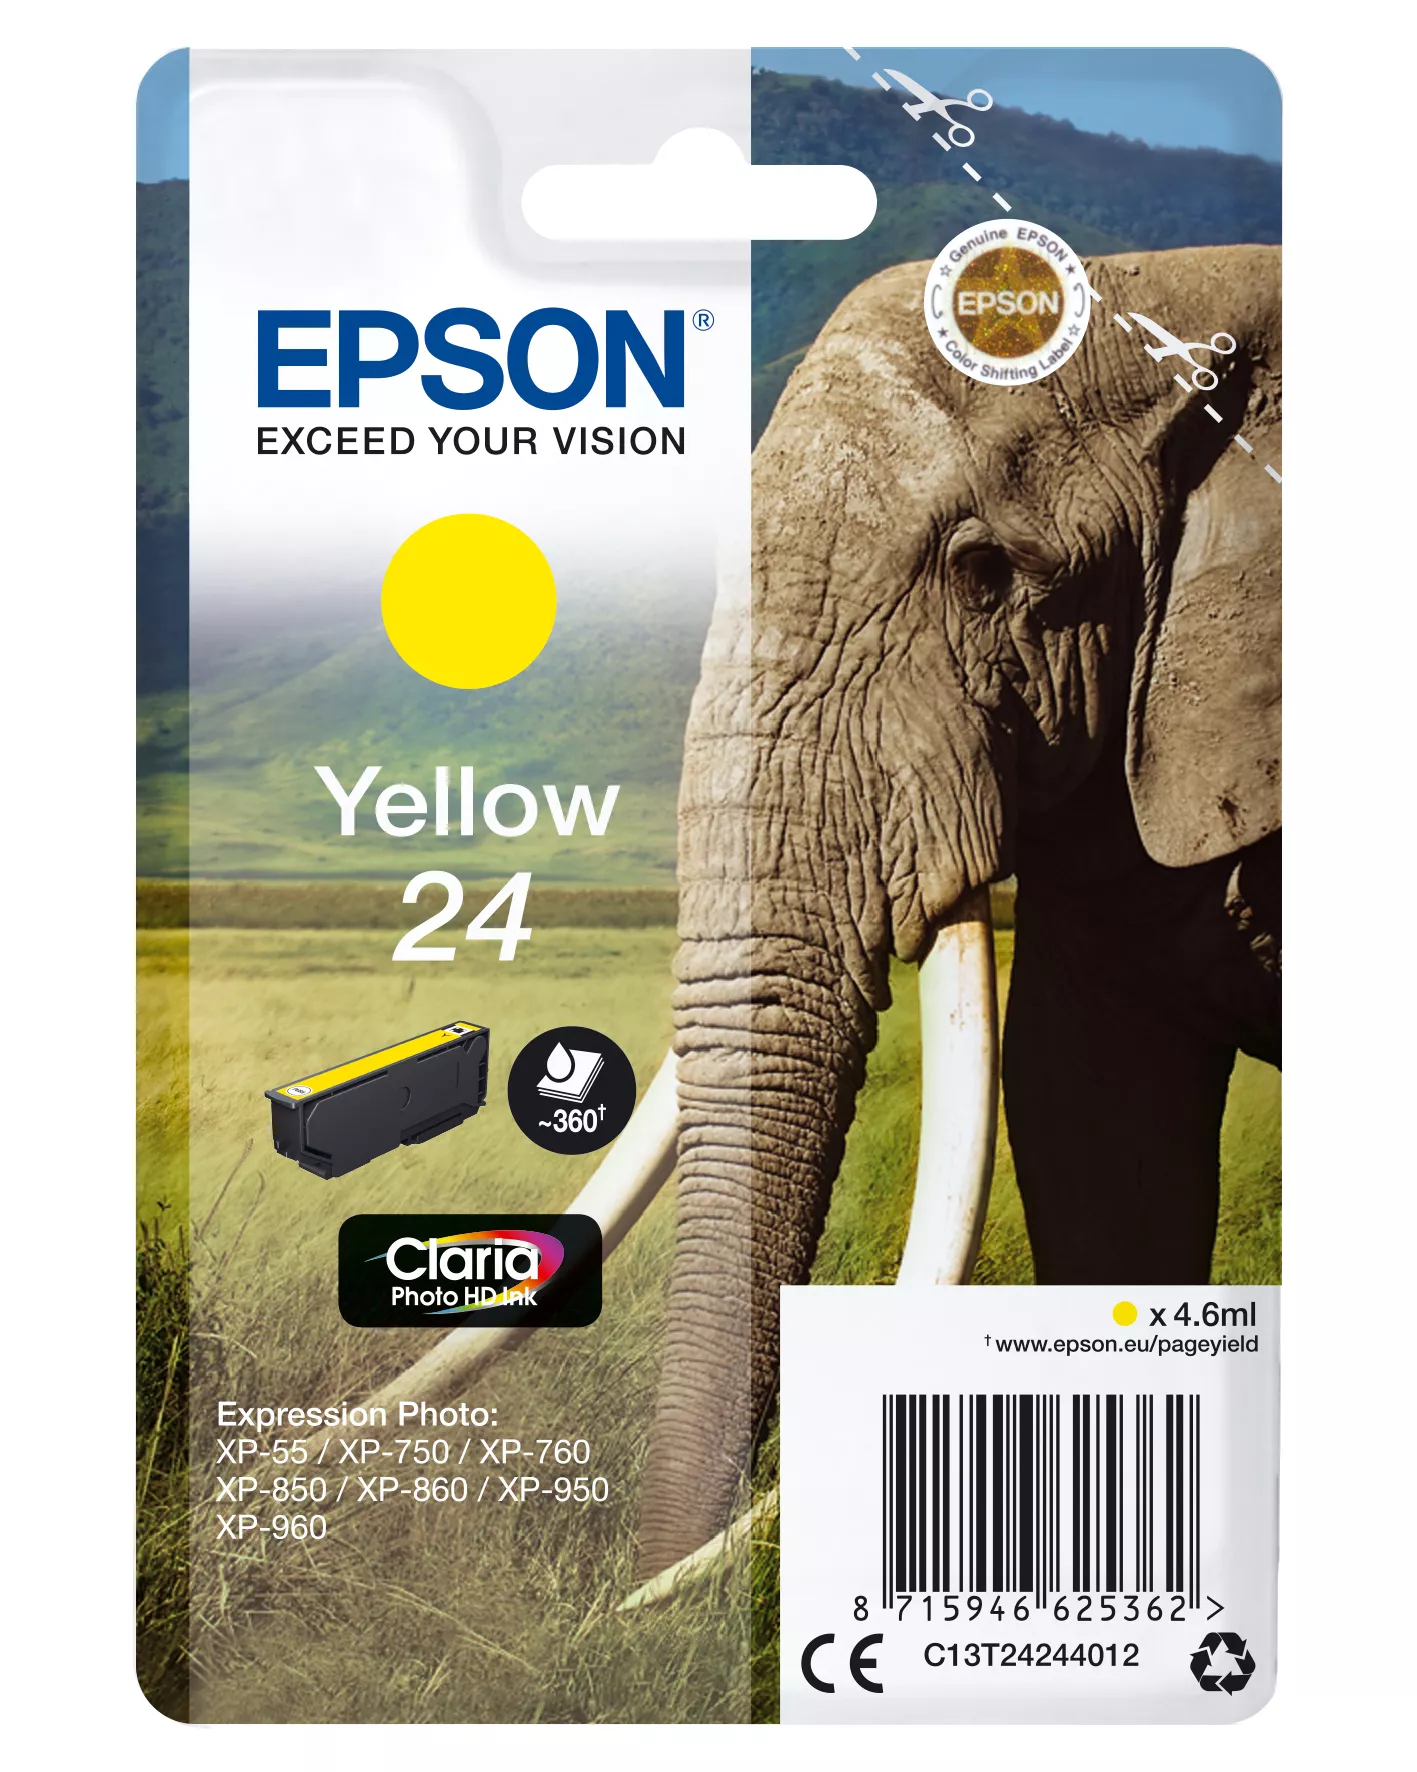 Achat EPSON 24 cartouche d encre jaune capacité standard 4.6ml au meilleur prix